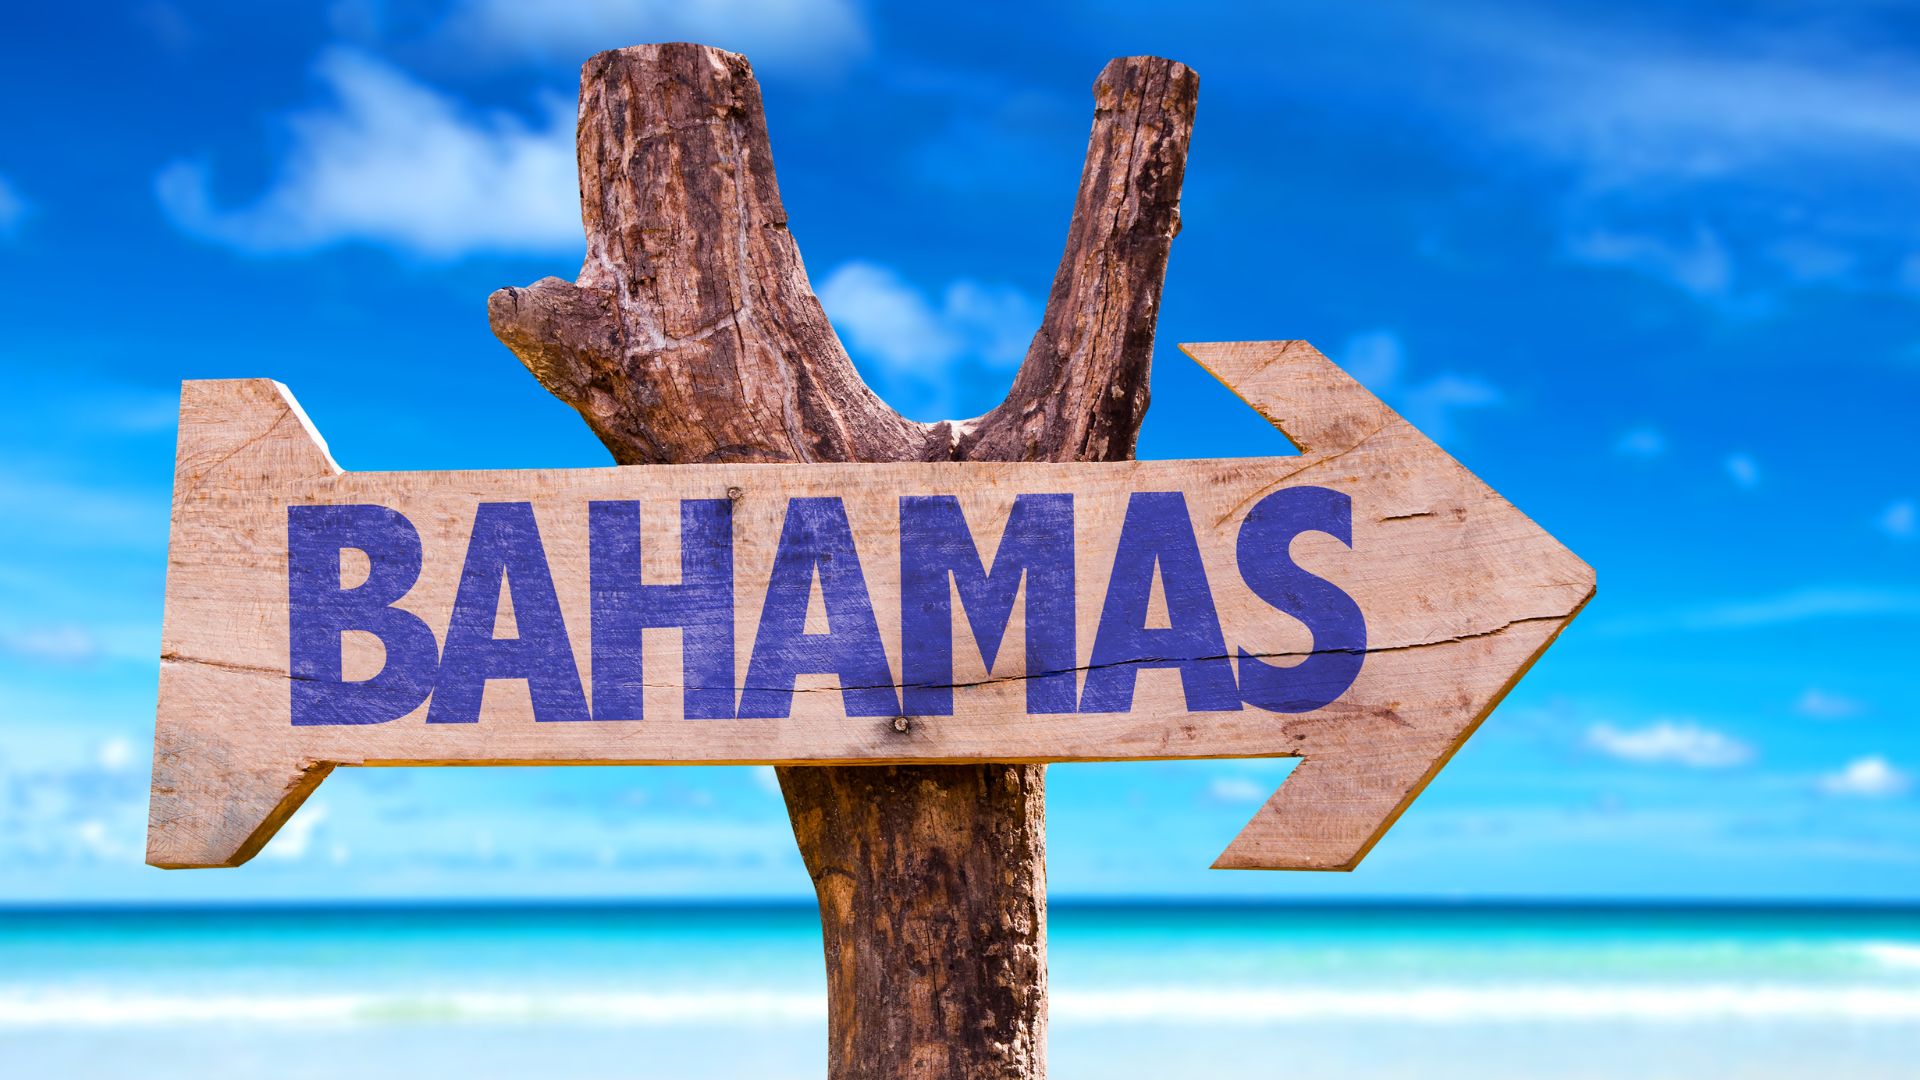 O Bitcoin nas Bahamas